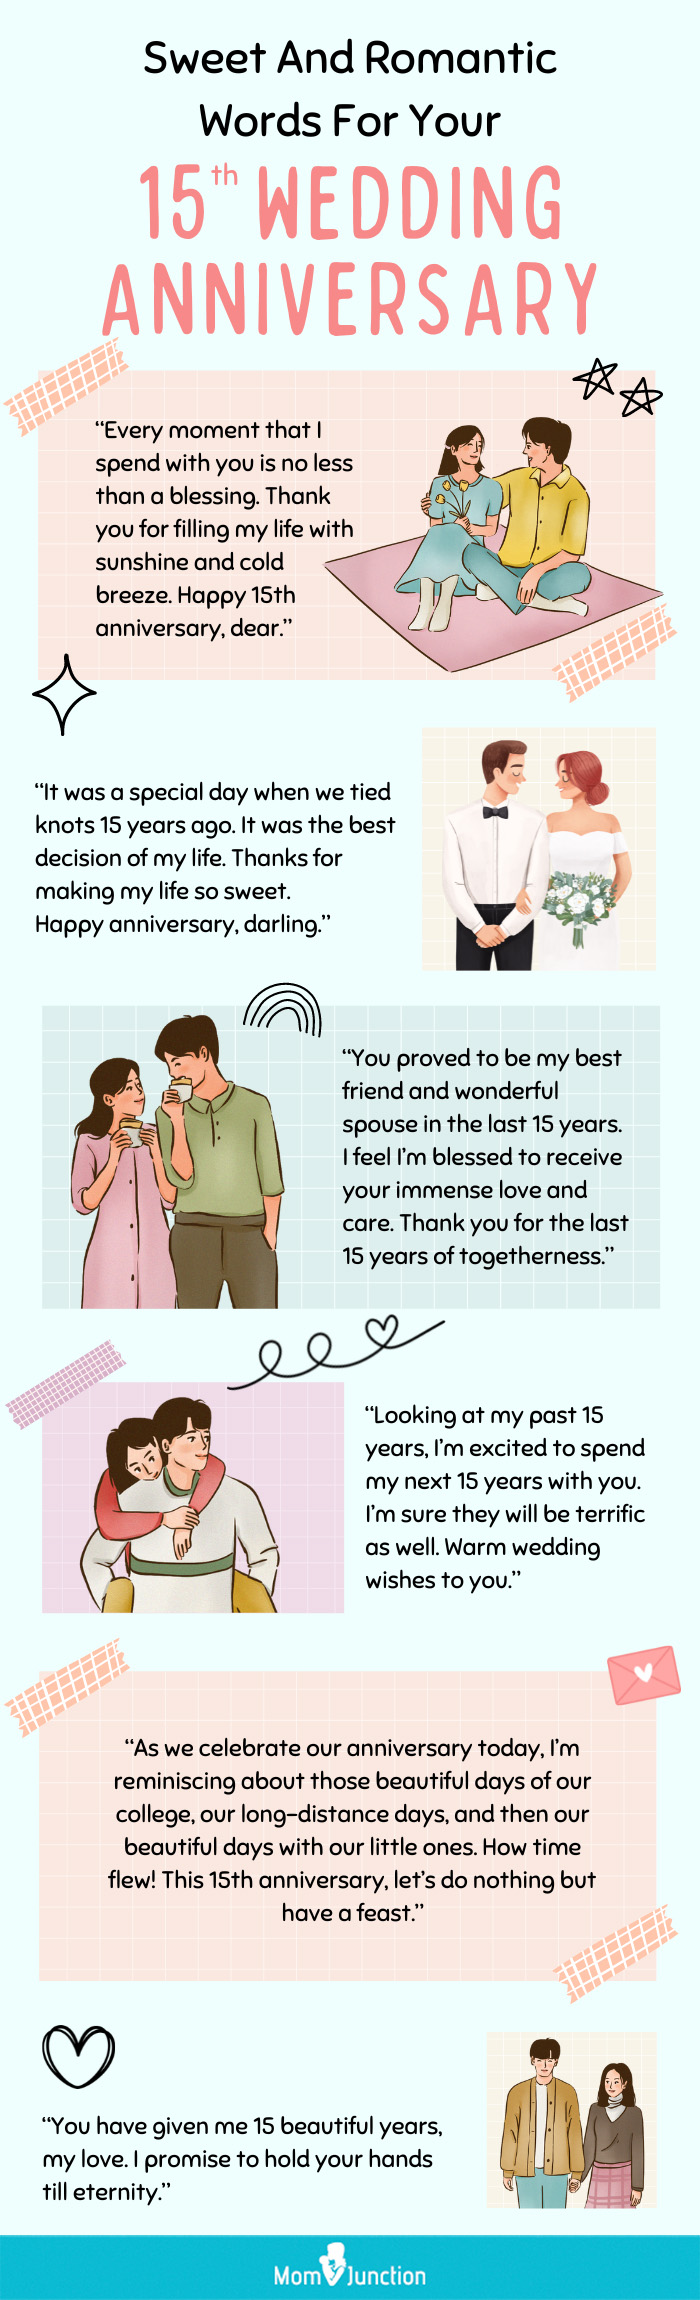 结婚15周年的浪漫话语(信息图)